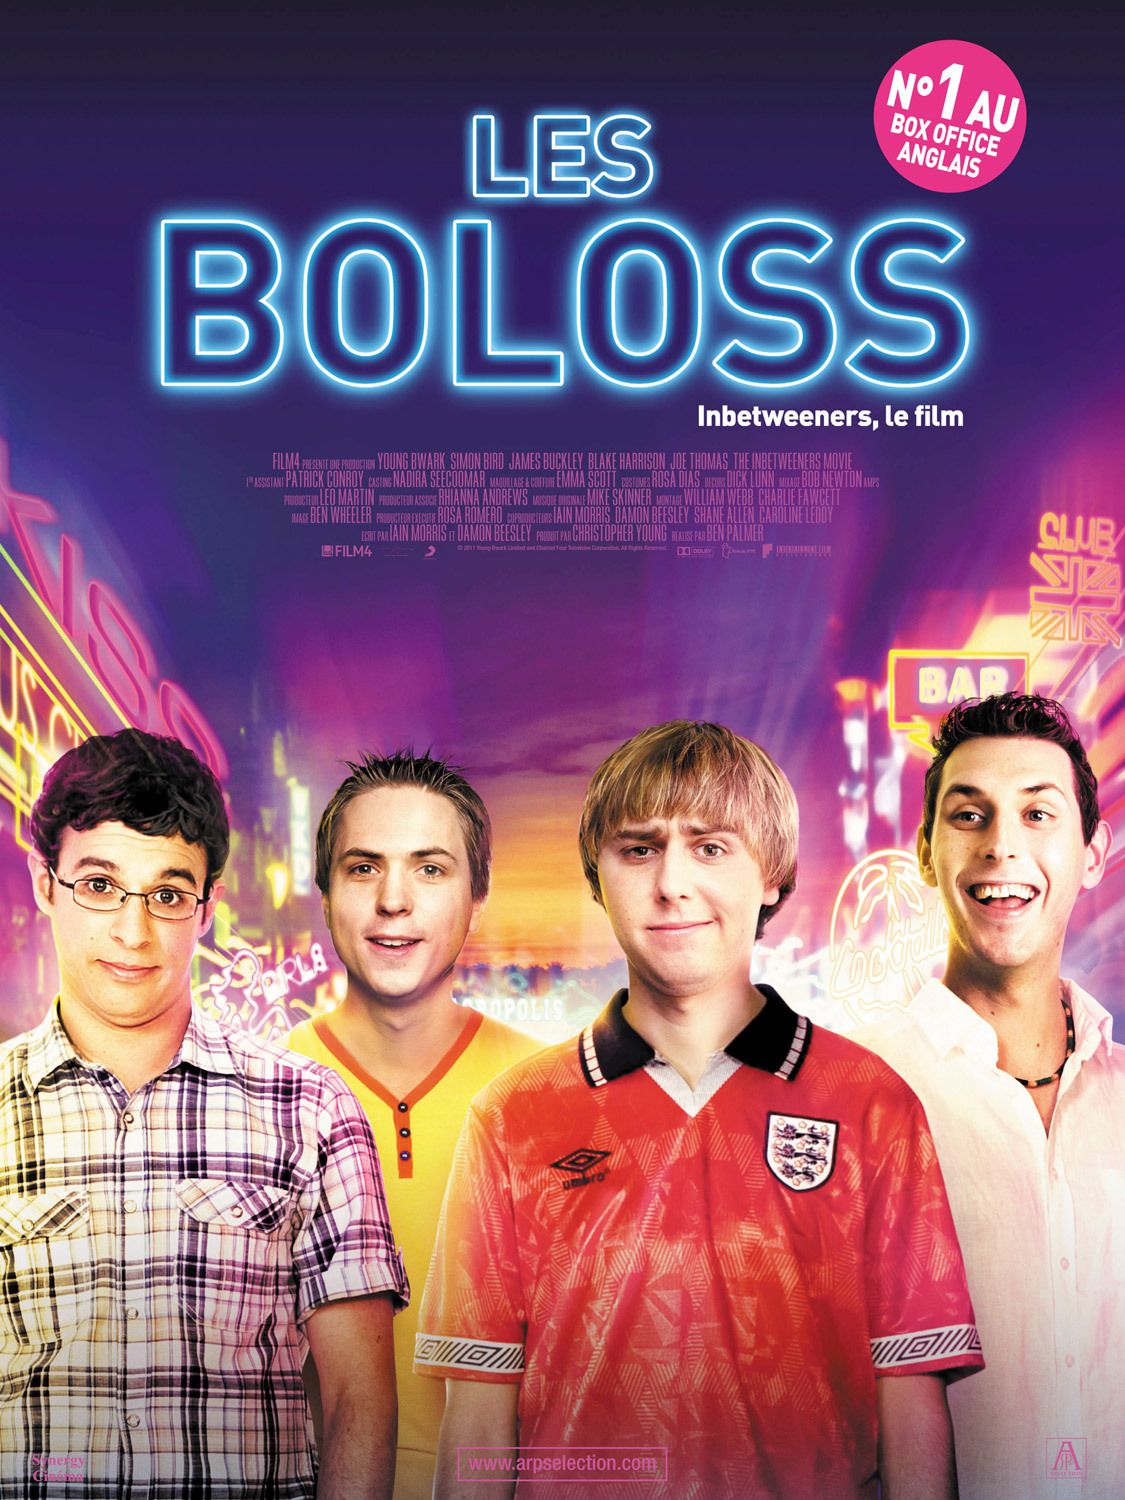 Les Boloss - Inbetweeners, le film - Film (2011)